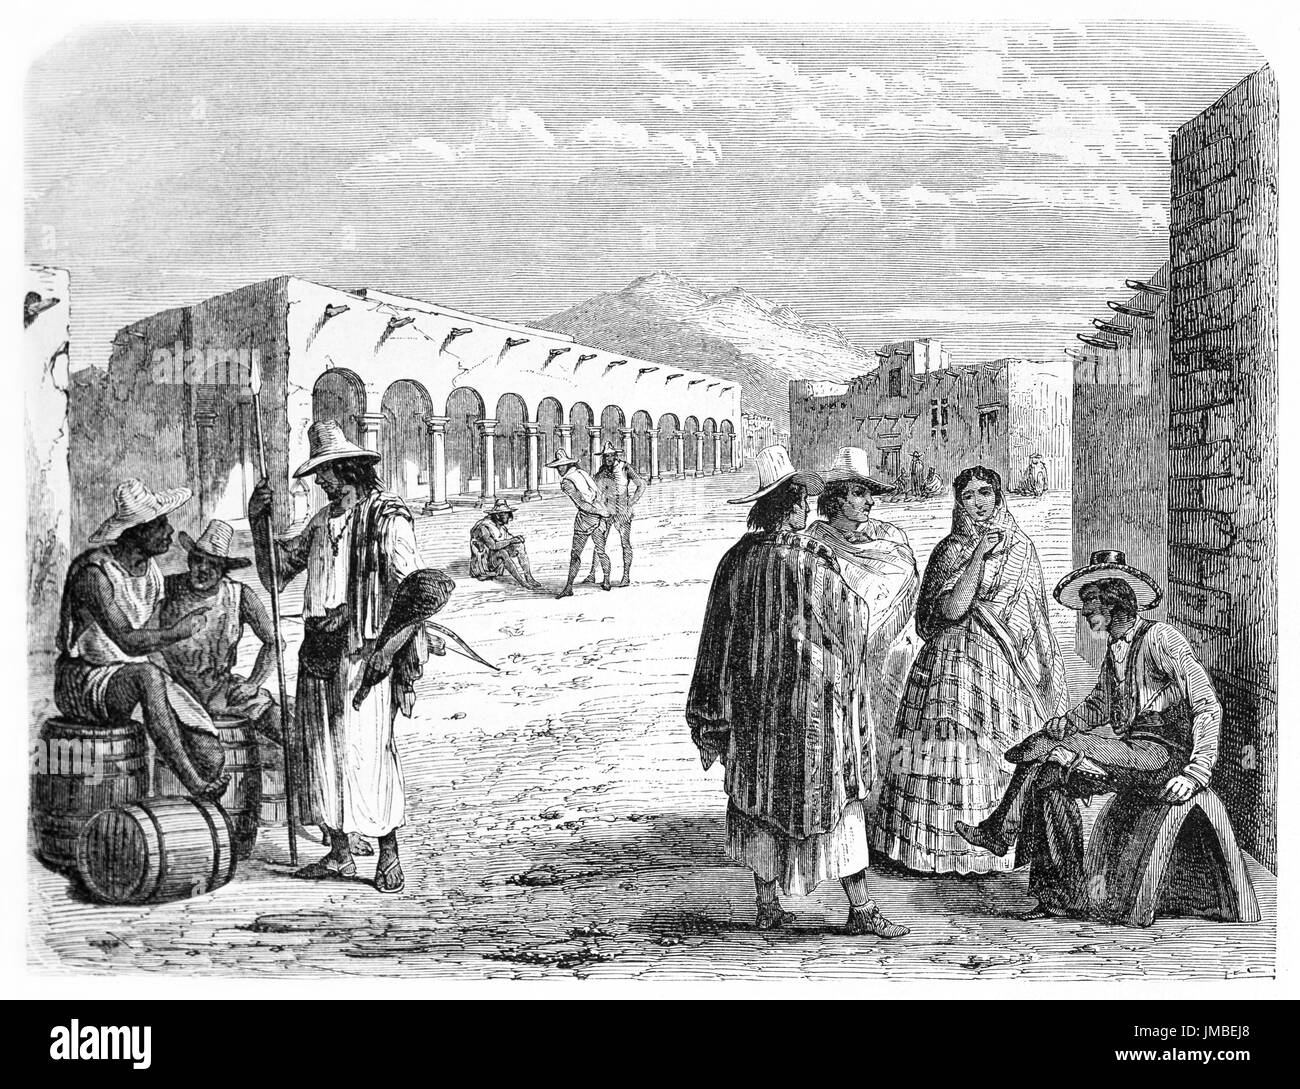 Les mexicains dans leur vie quotidienne sur la place de l'abattage à Chihuahua, au Mexique. Art de style gravure de tons gris anciens par Maurin, le Tour du monde, 1861 Banque D'Images